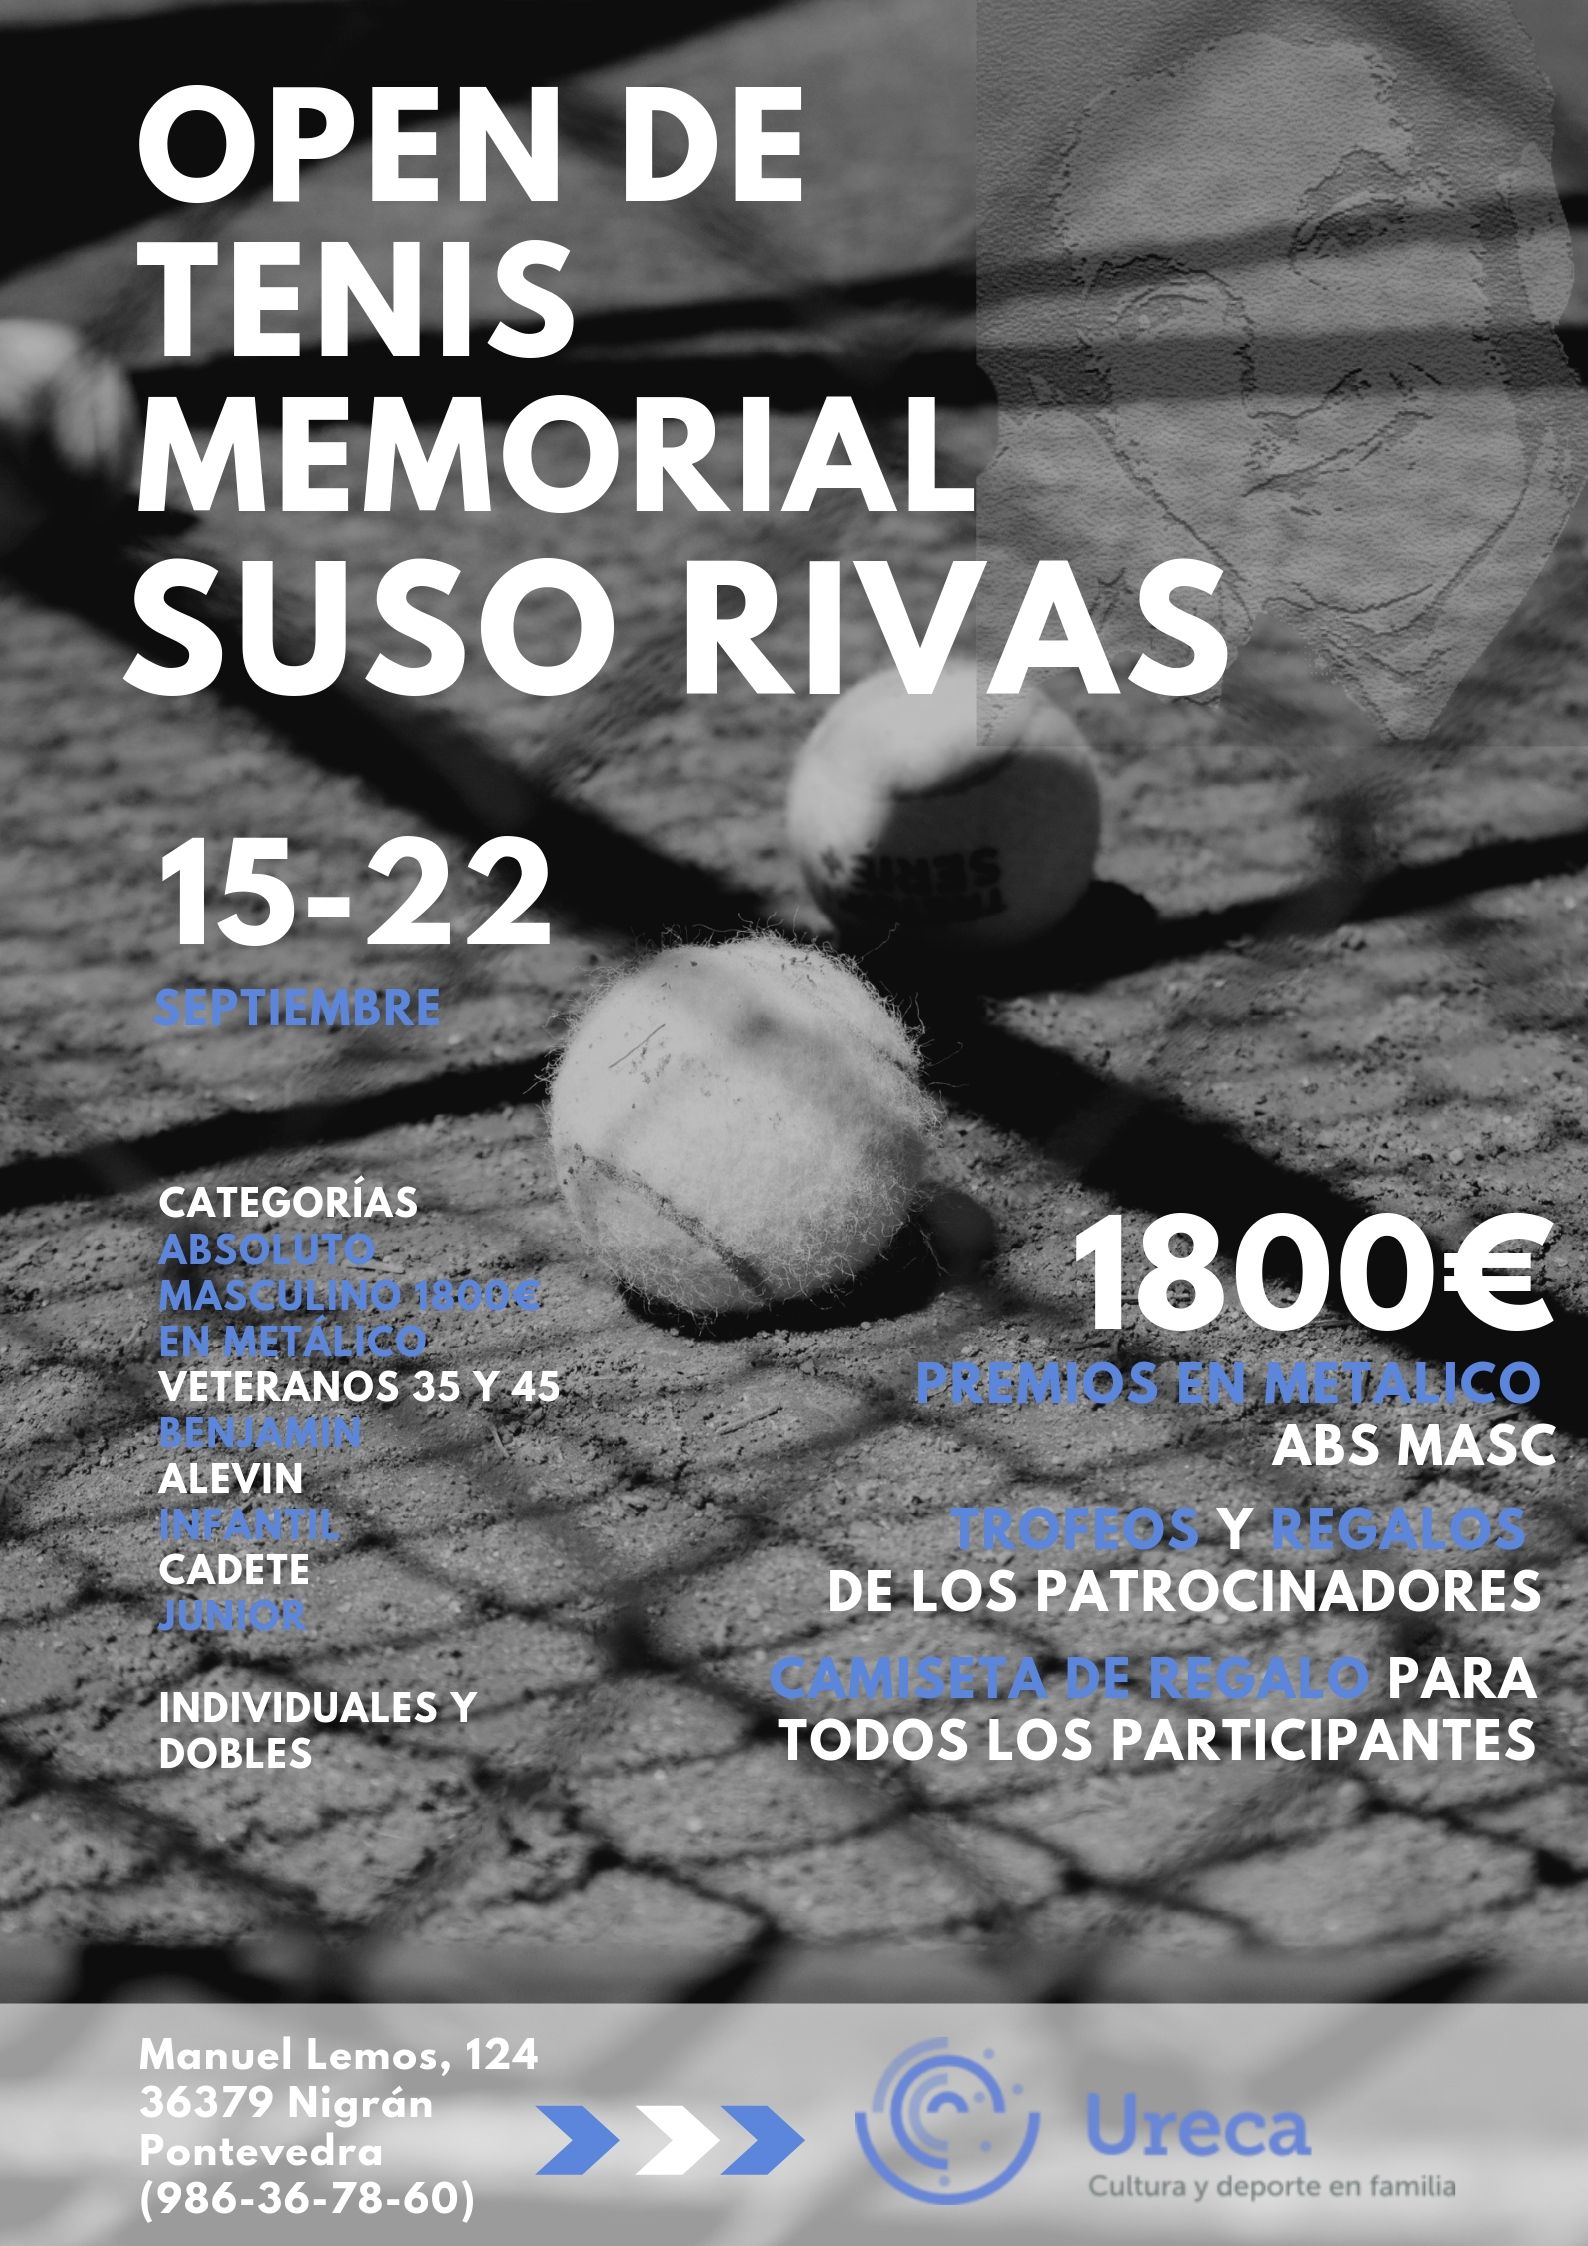 Open de tenis MEMORIAL SUSO RIVAS